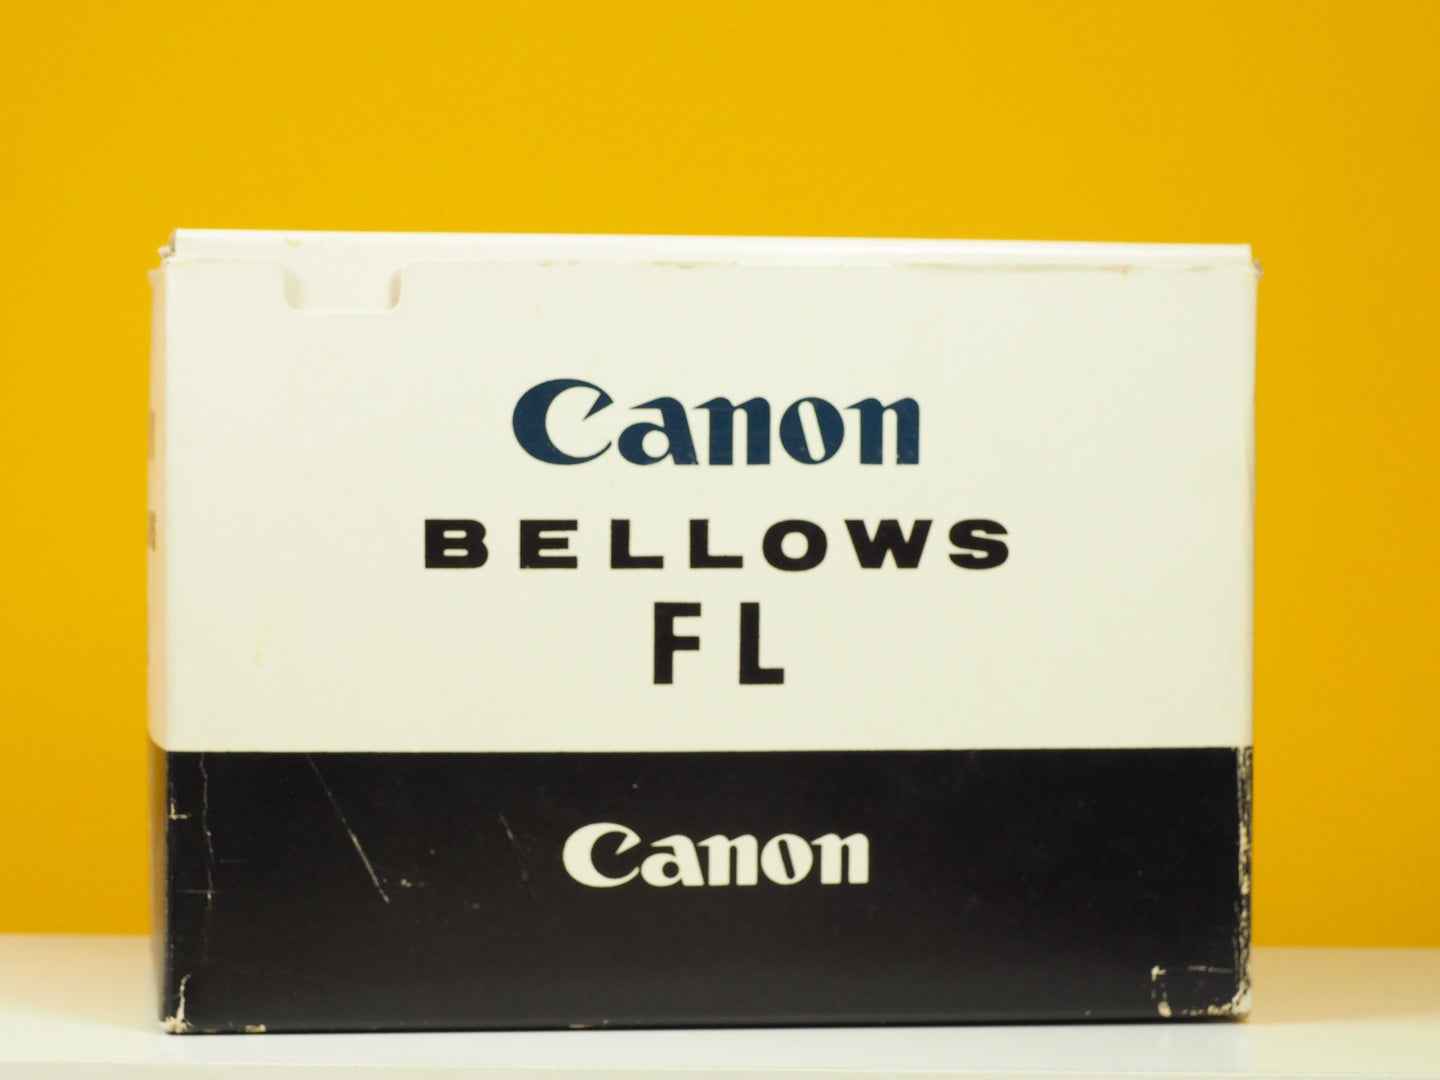 Canon Bellows FL Boxed